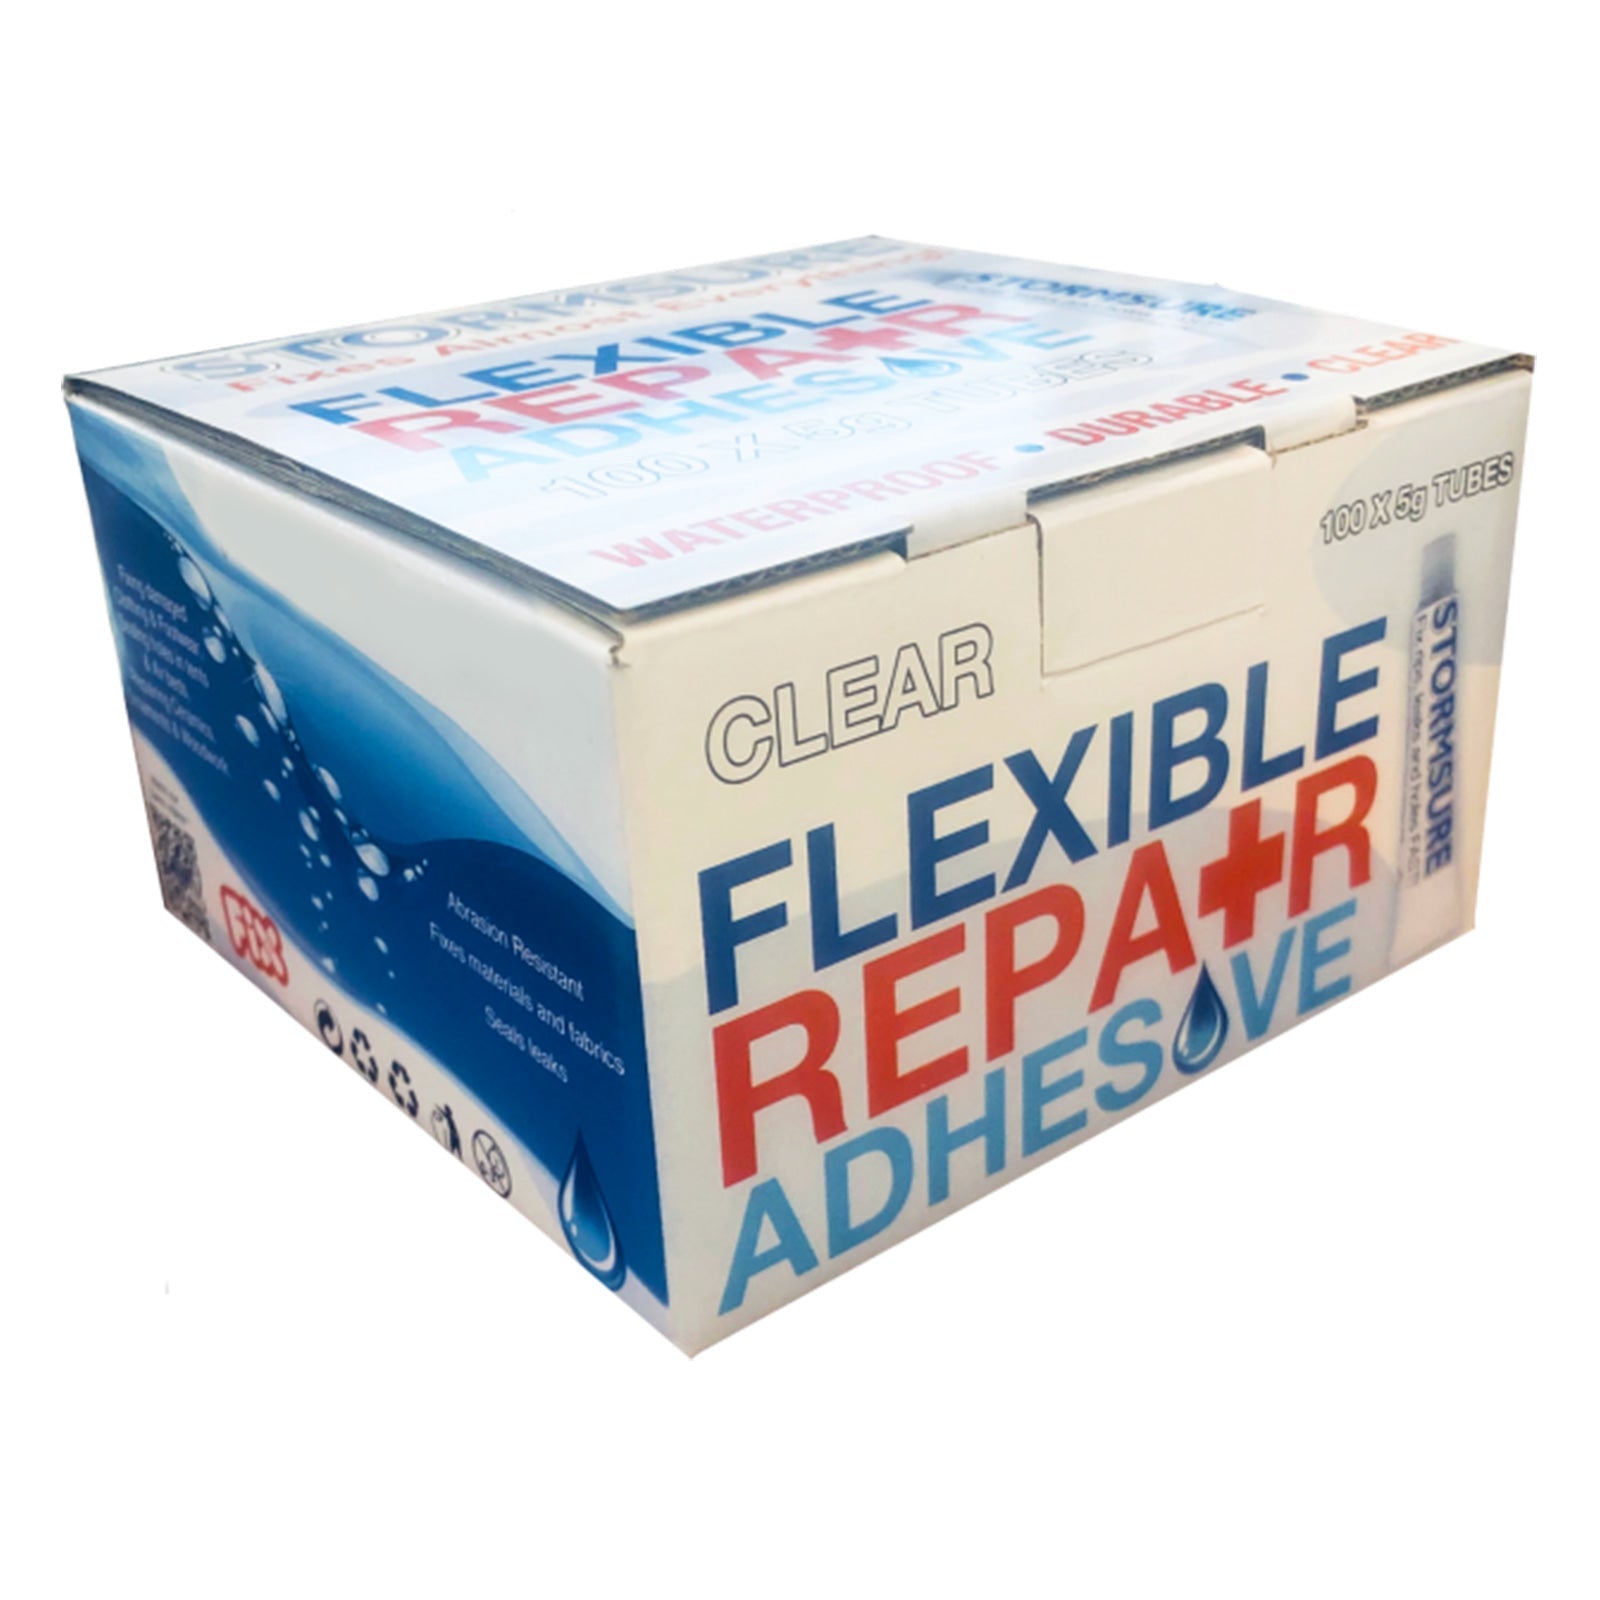 Stormsure Clear Flexible Repair Adhesive 5g (100-Pack)